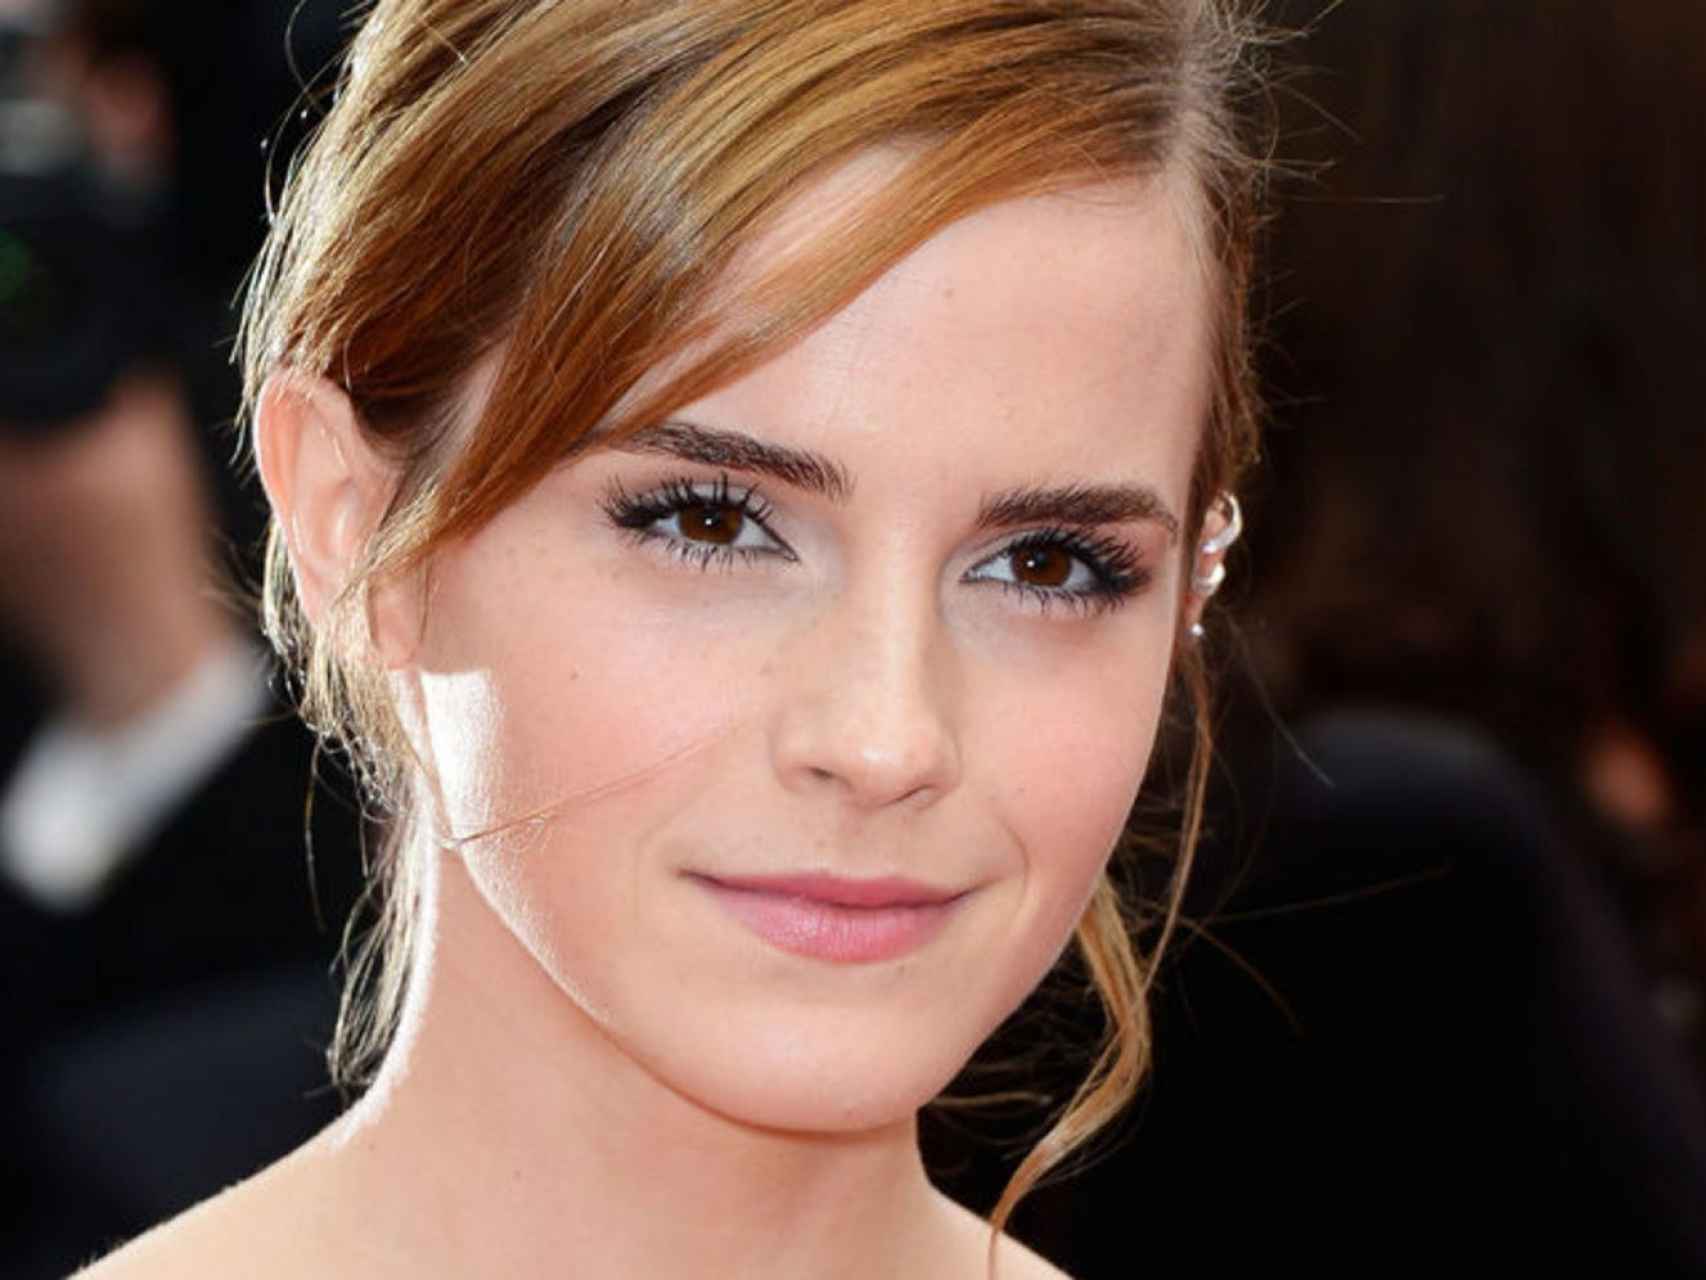 La actriz Emma Watson.